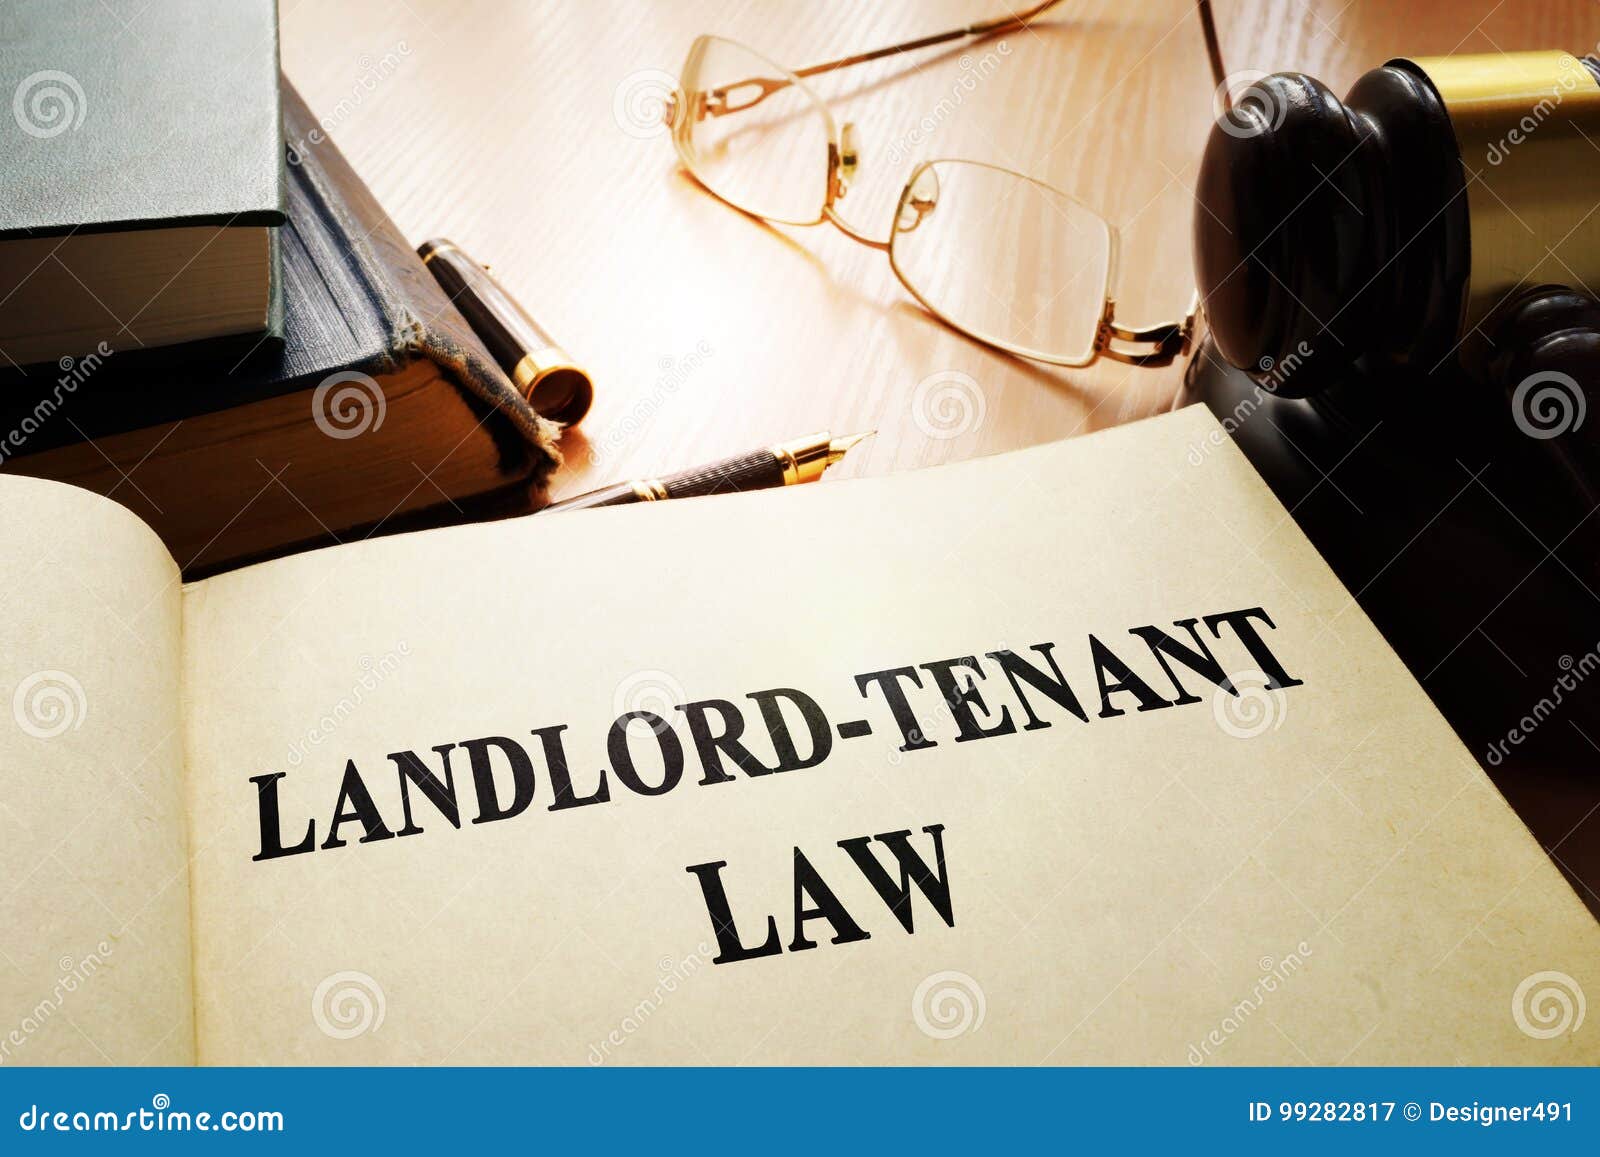 landlord-tenant law.